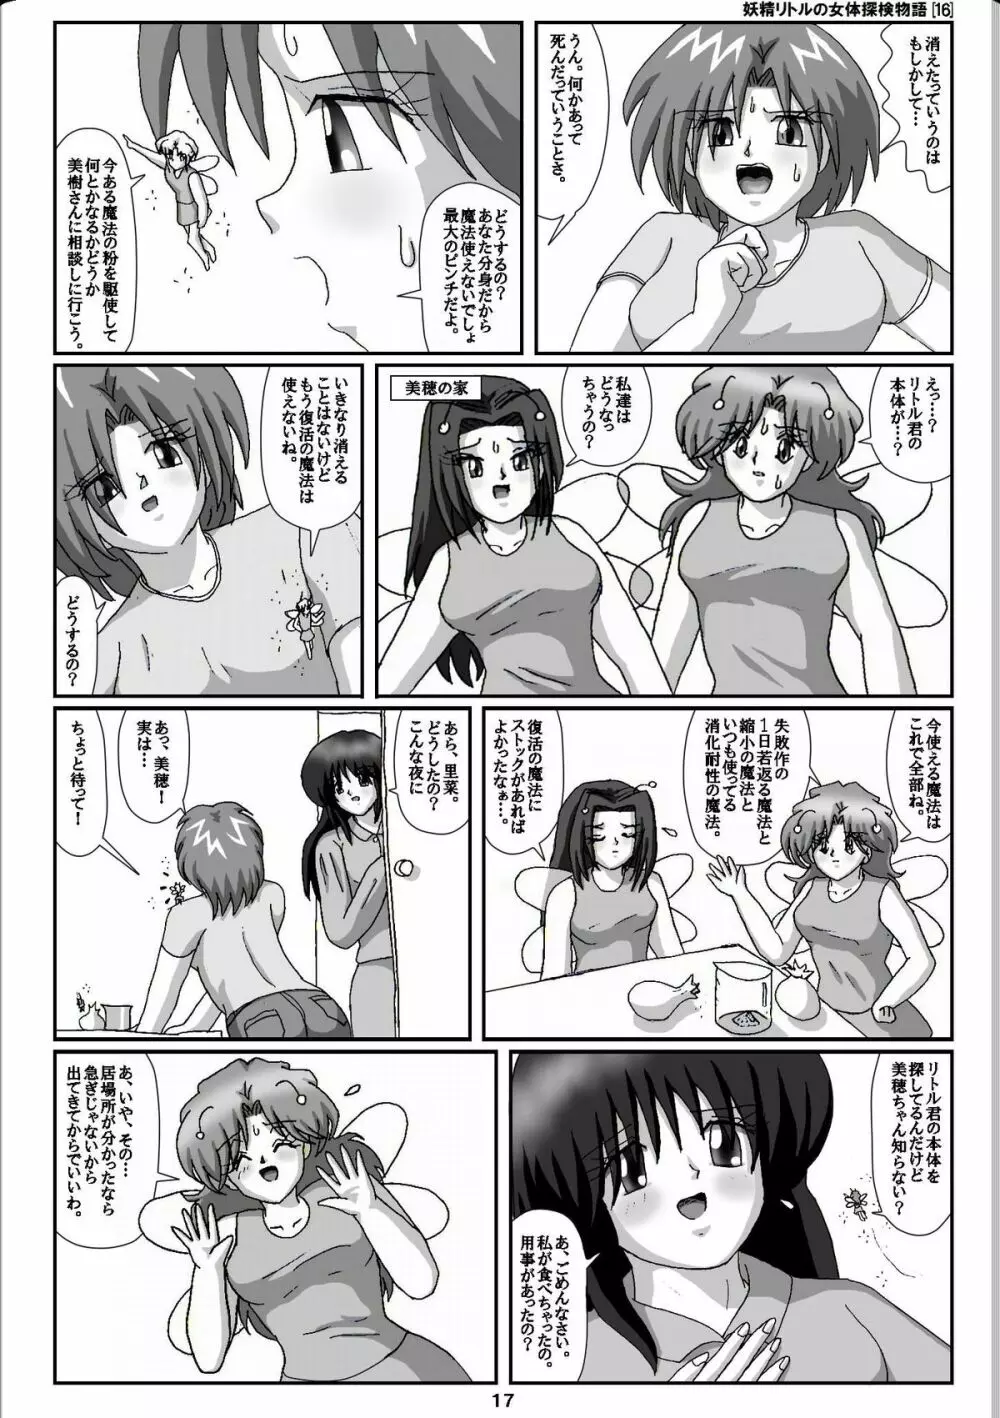 妖精リトルの女体探検物語 16 17ページ